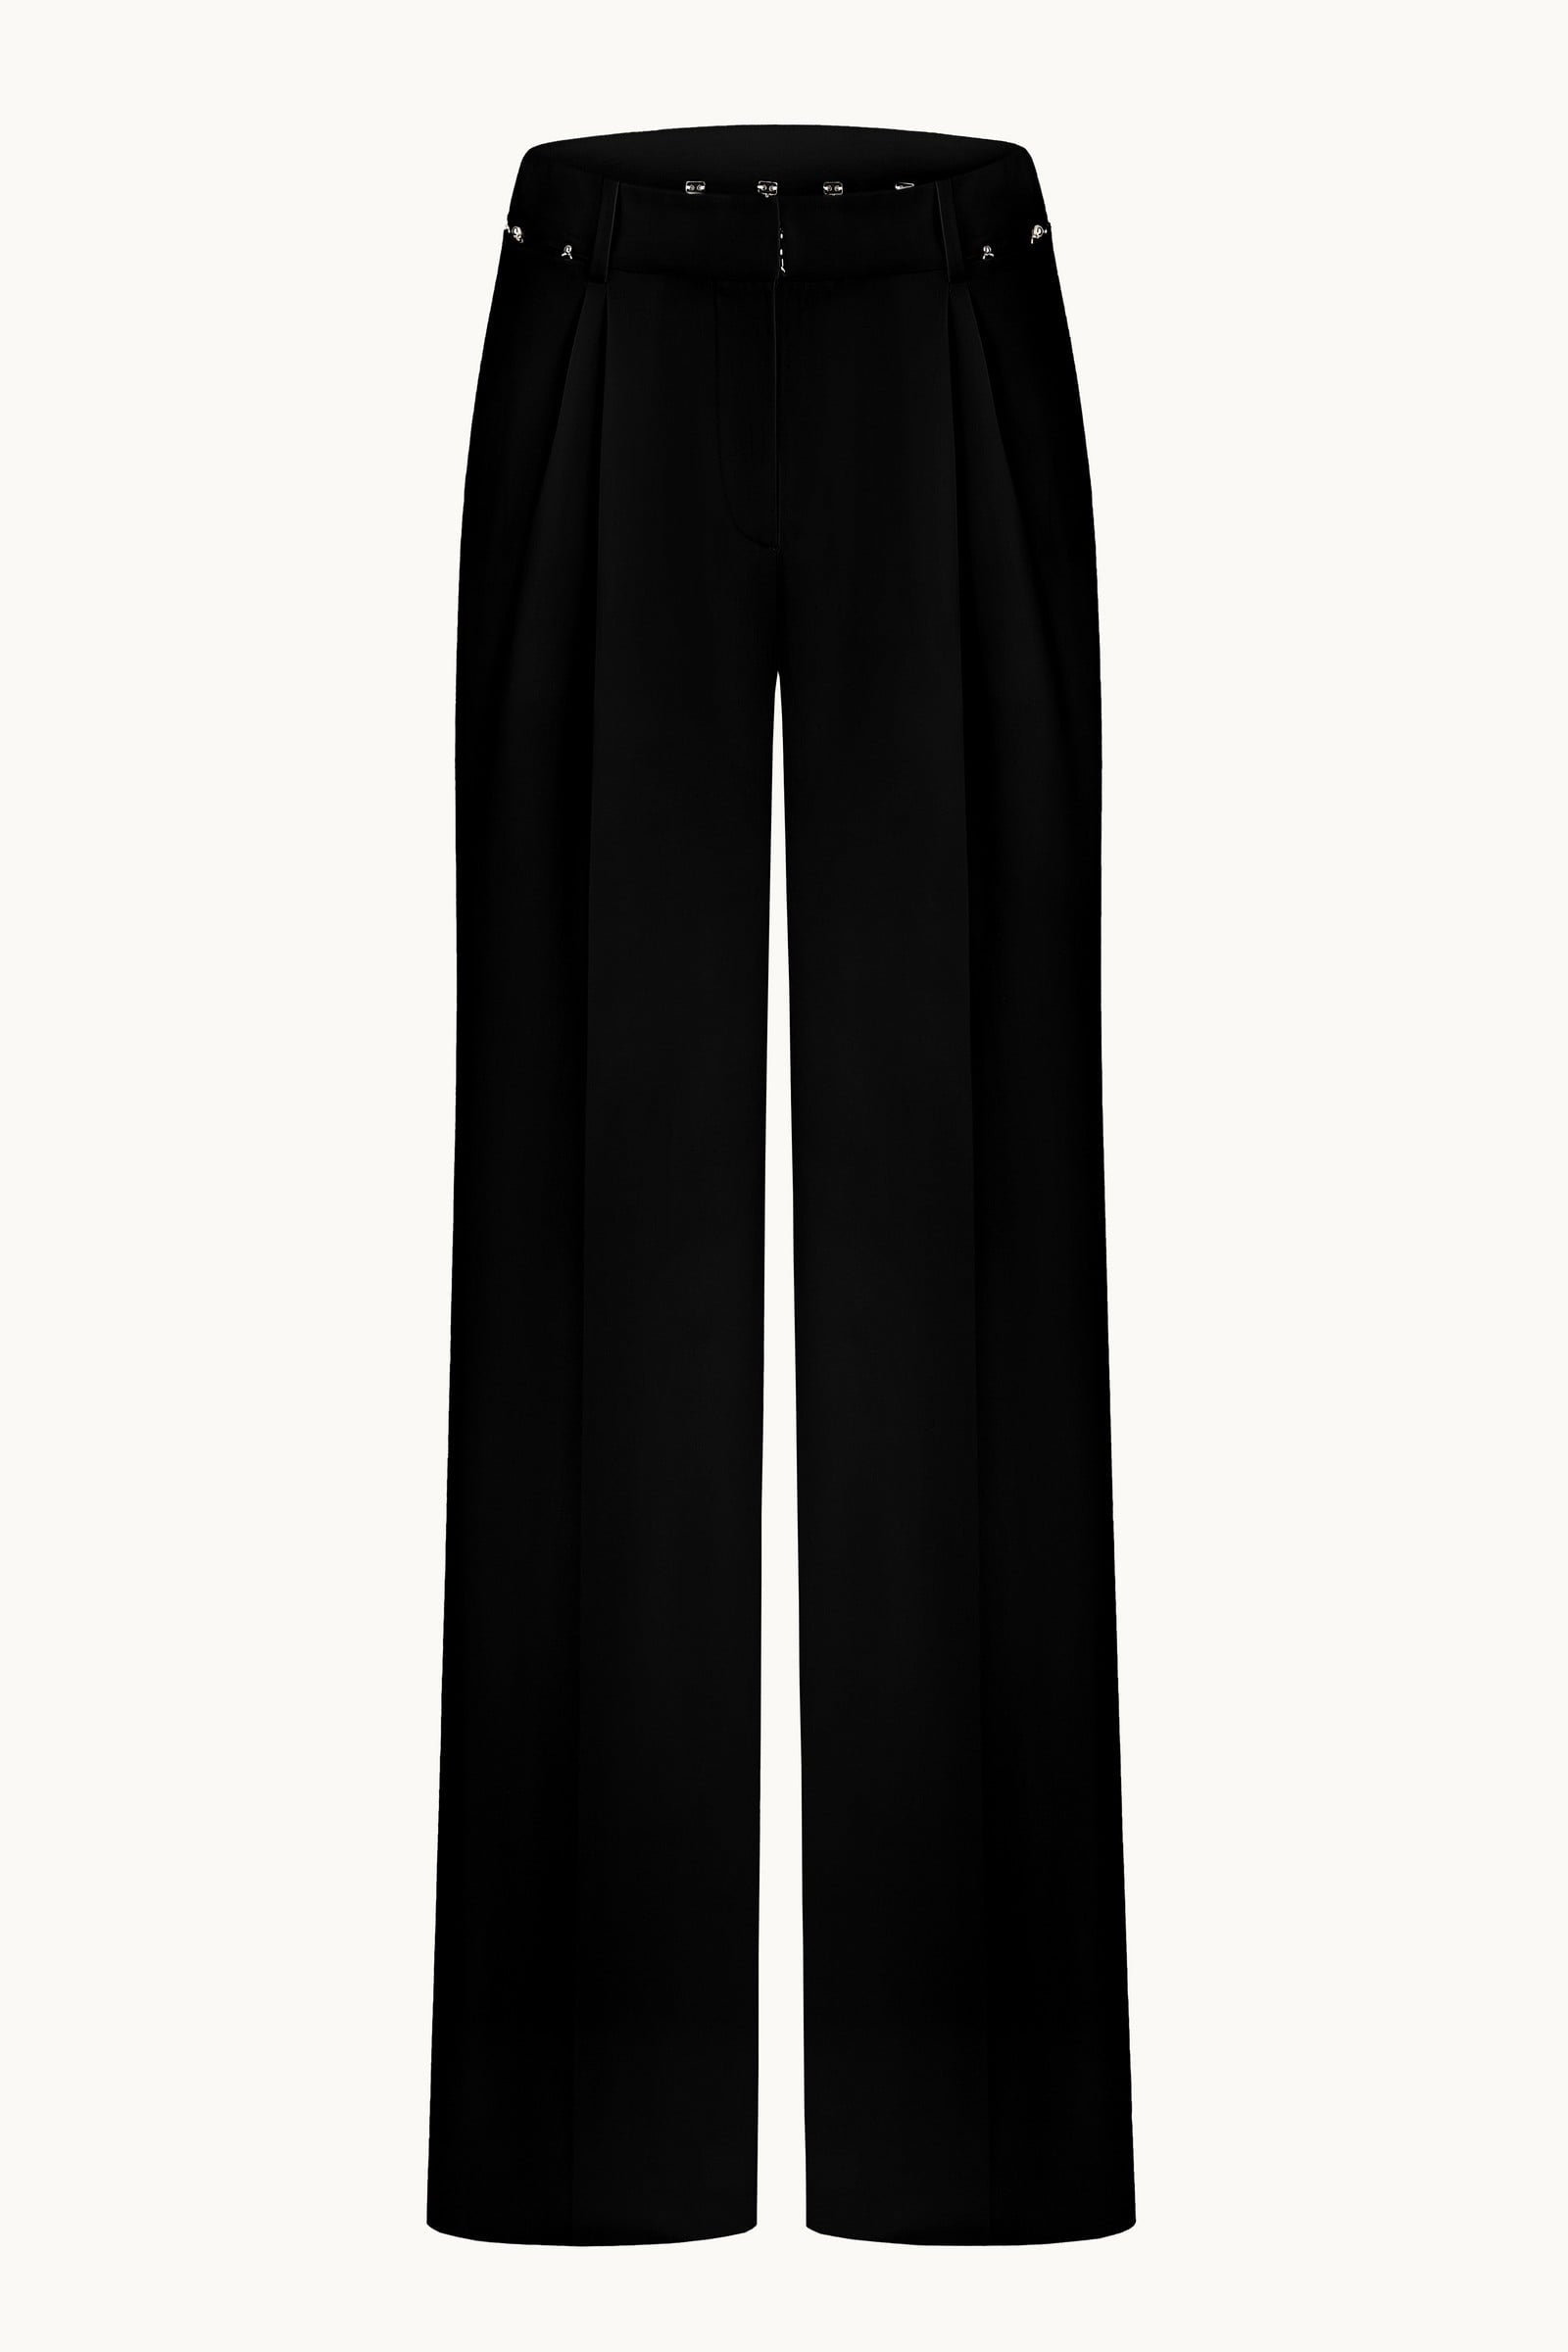 Black Plain Dress Pant SDP22302-BK – RoyalTag